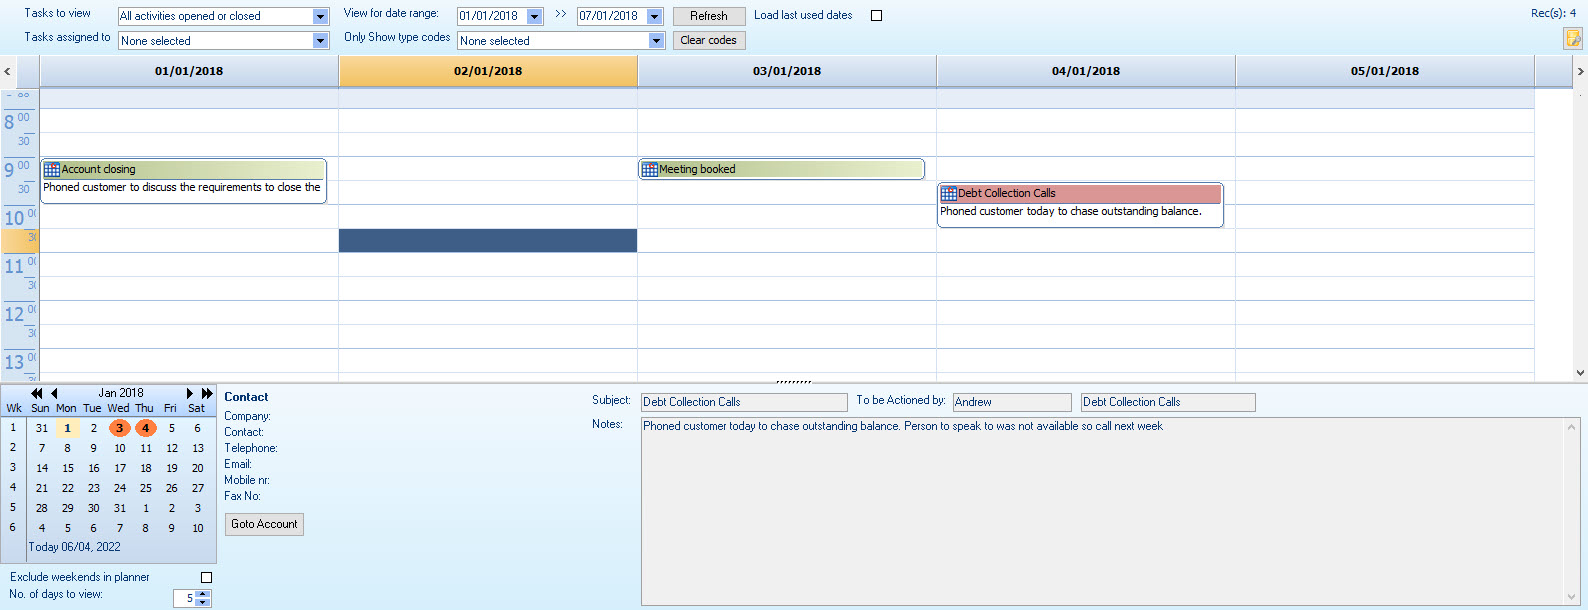 tasks_calendar_view